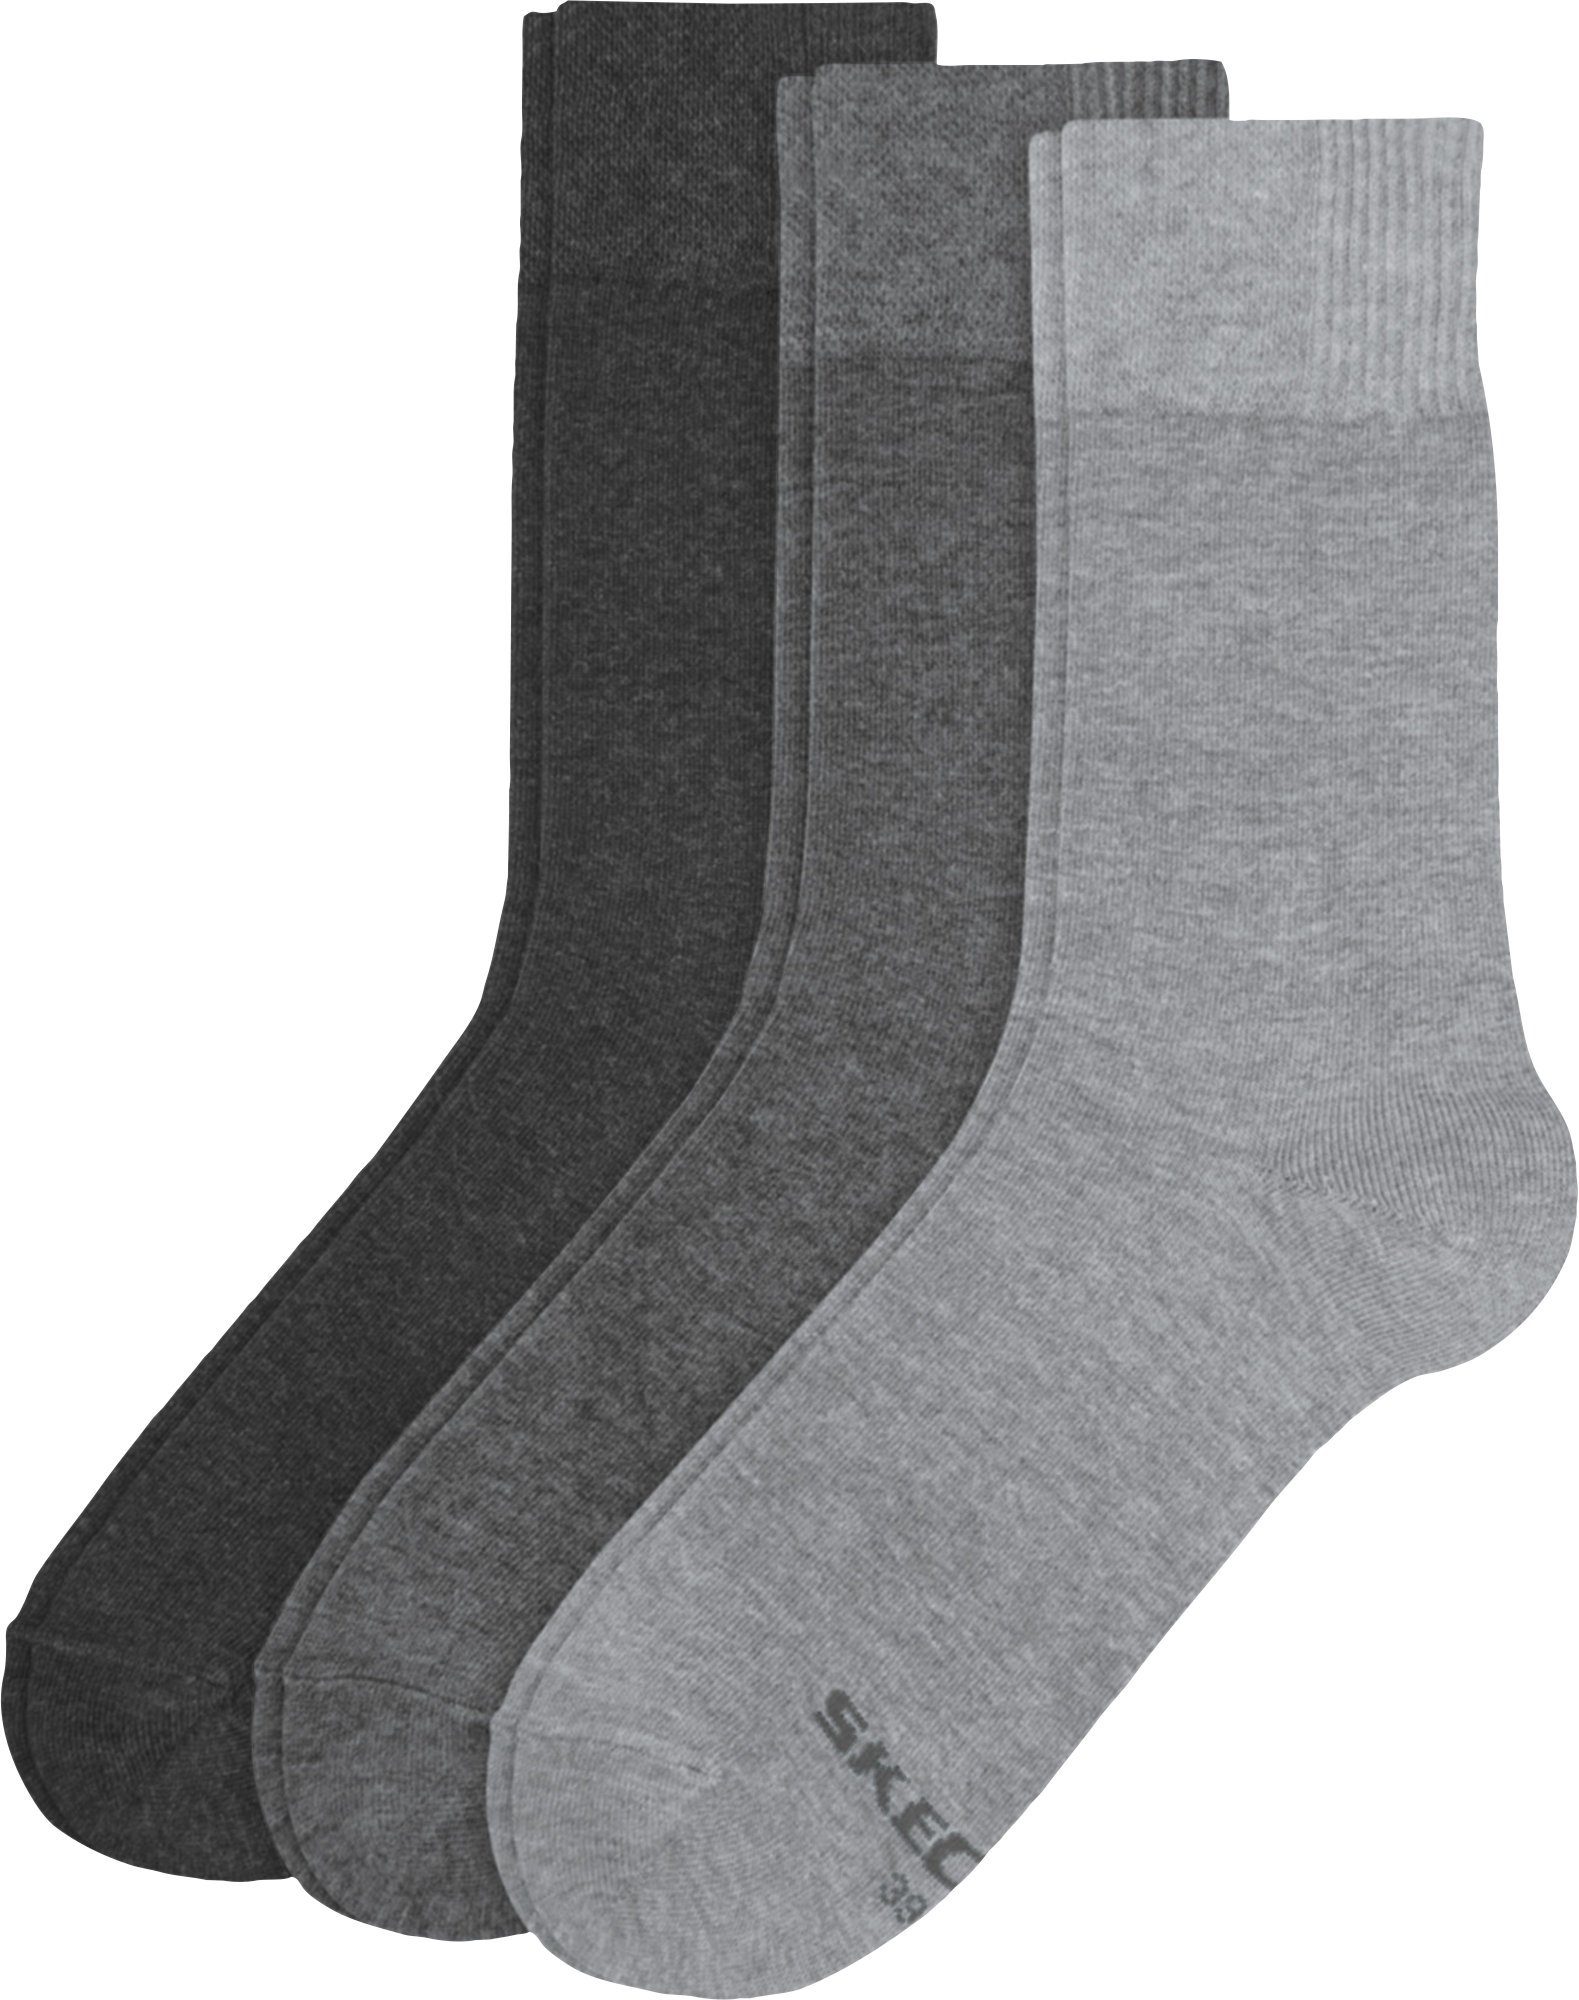 Skechers Socken Herren-Socken 3 Paar Uni grau